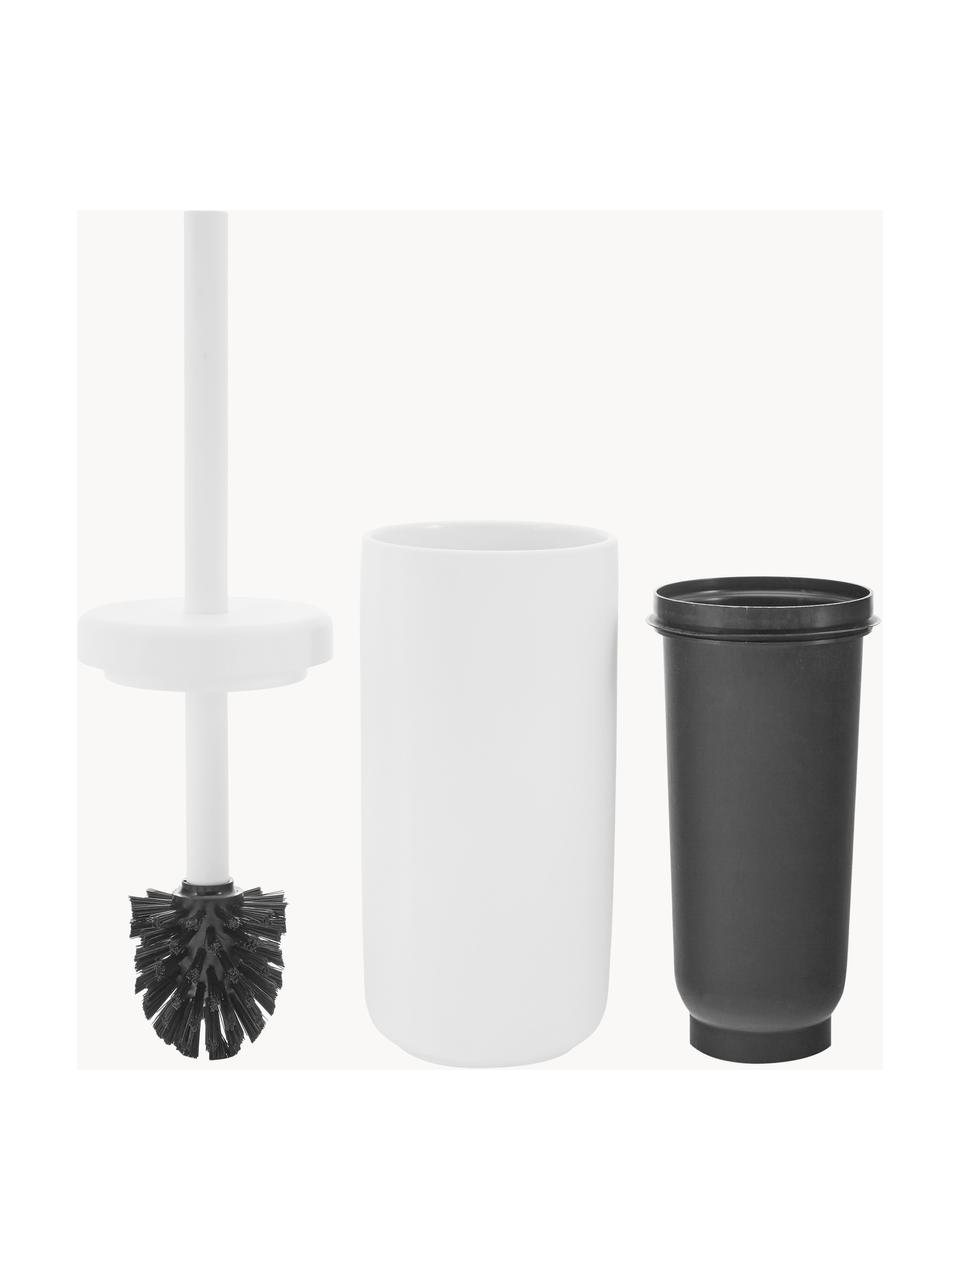 Toilettenbürste Ume mit Behälter, Behälter: Steingut überzogen mit So, Griff: Kunststoff, Weiss, Ø 10 x H 39 cm